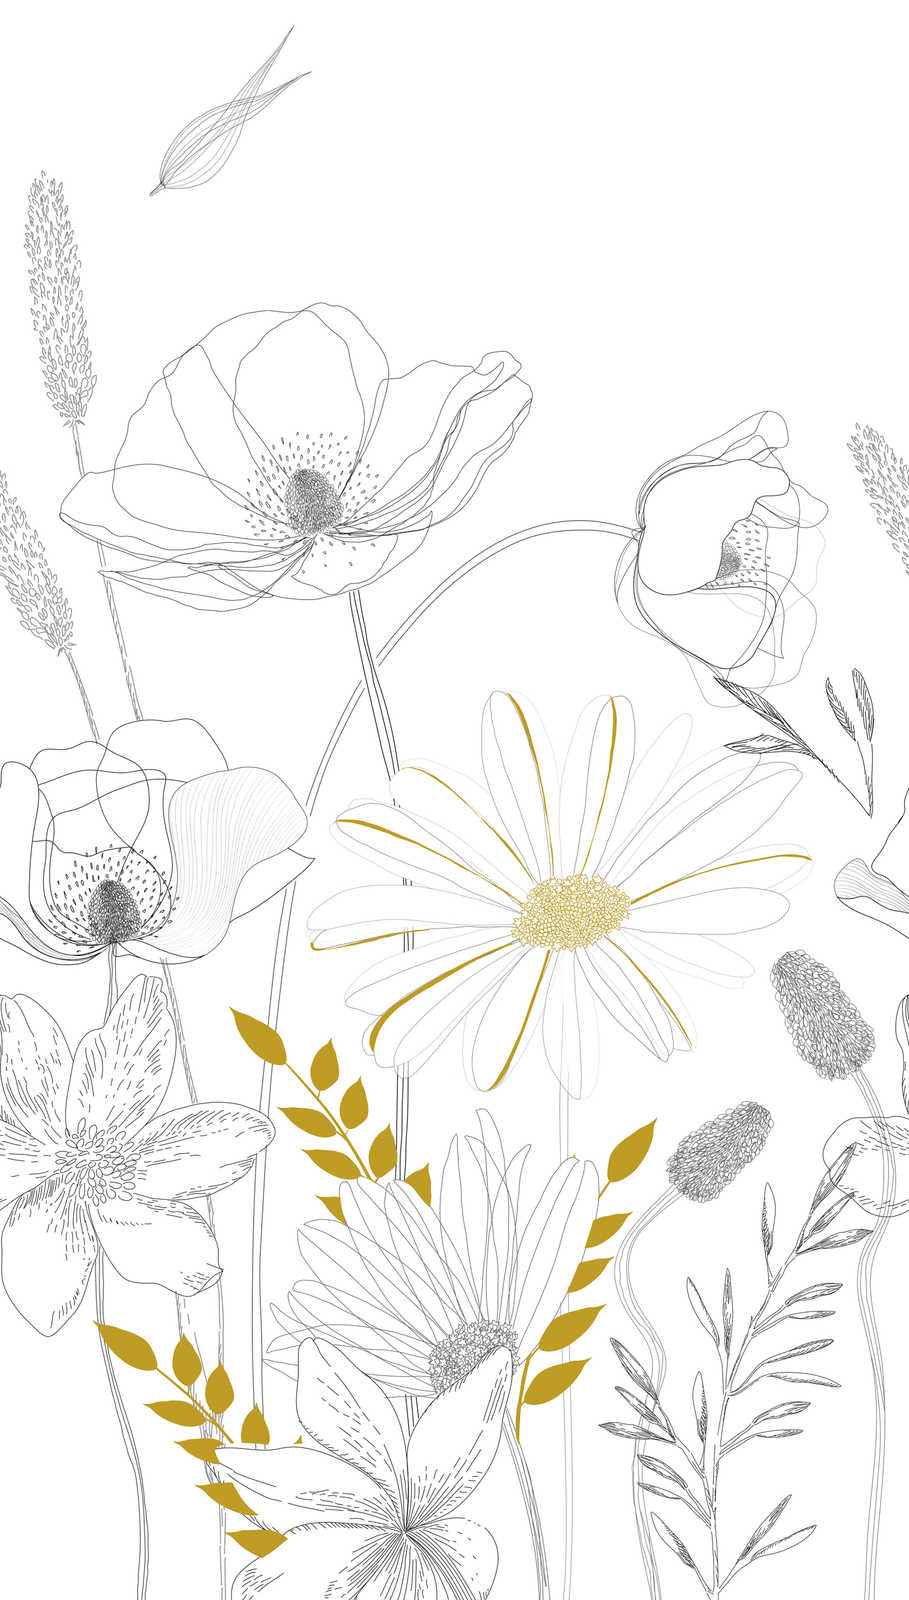             papier peint à motifs floraux dessinés avec des accents de couleur - blanc, noir, jaune
        